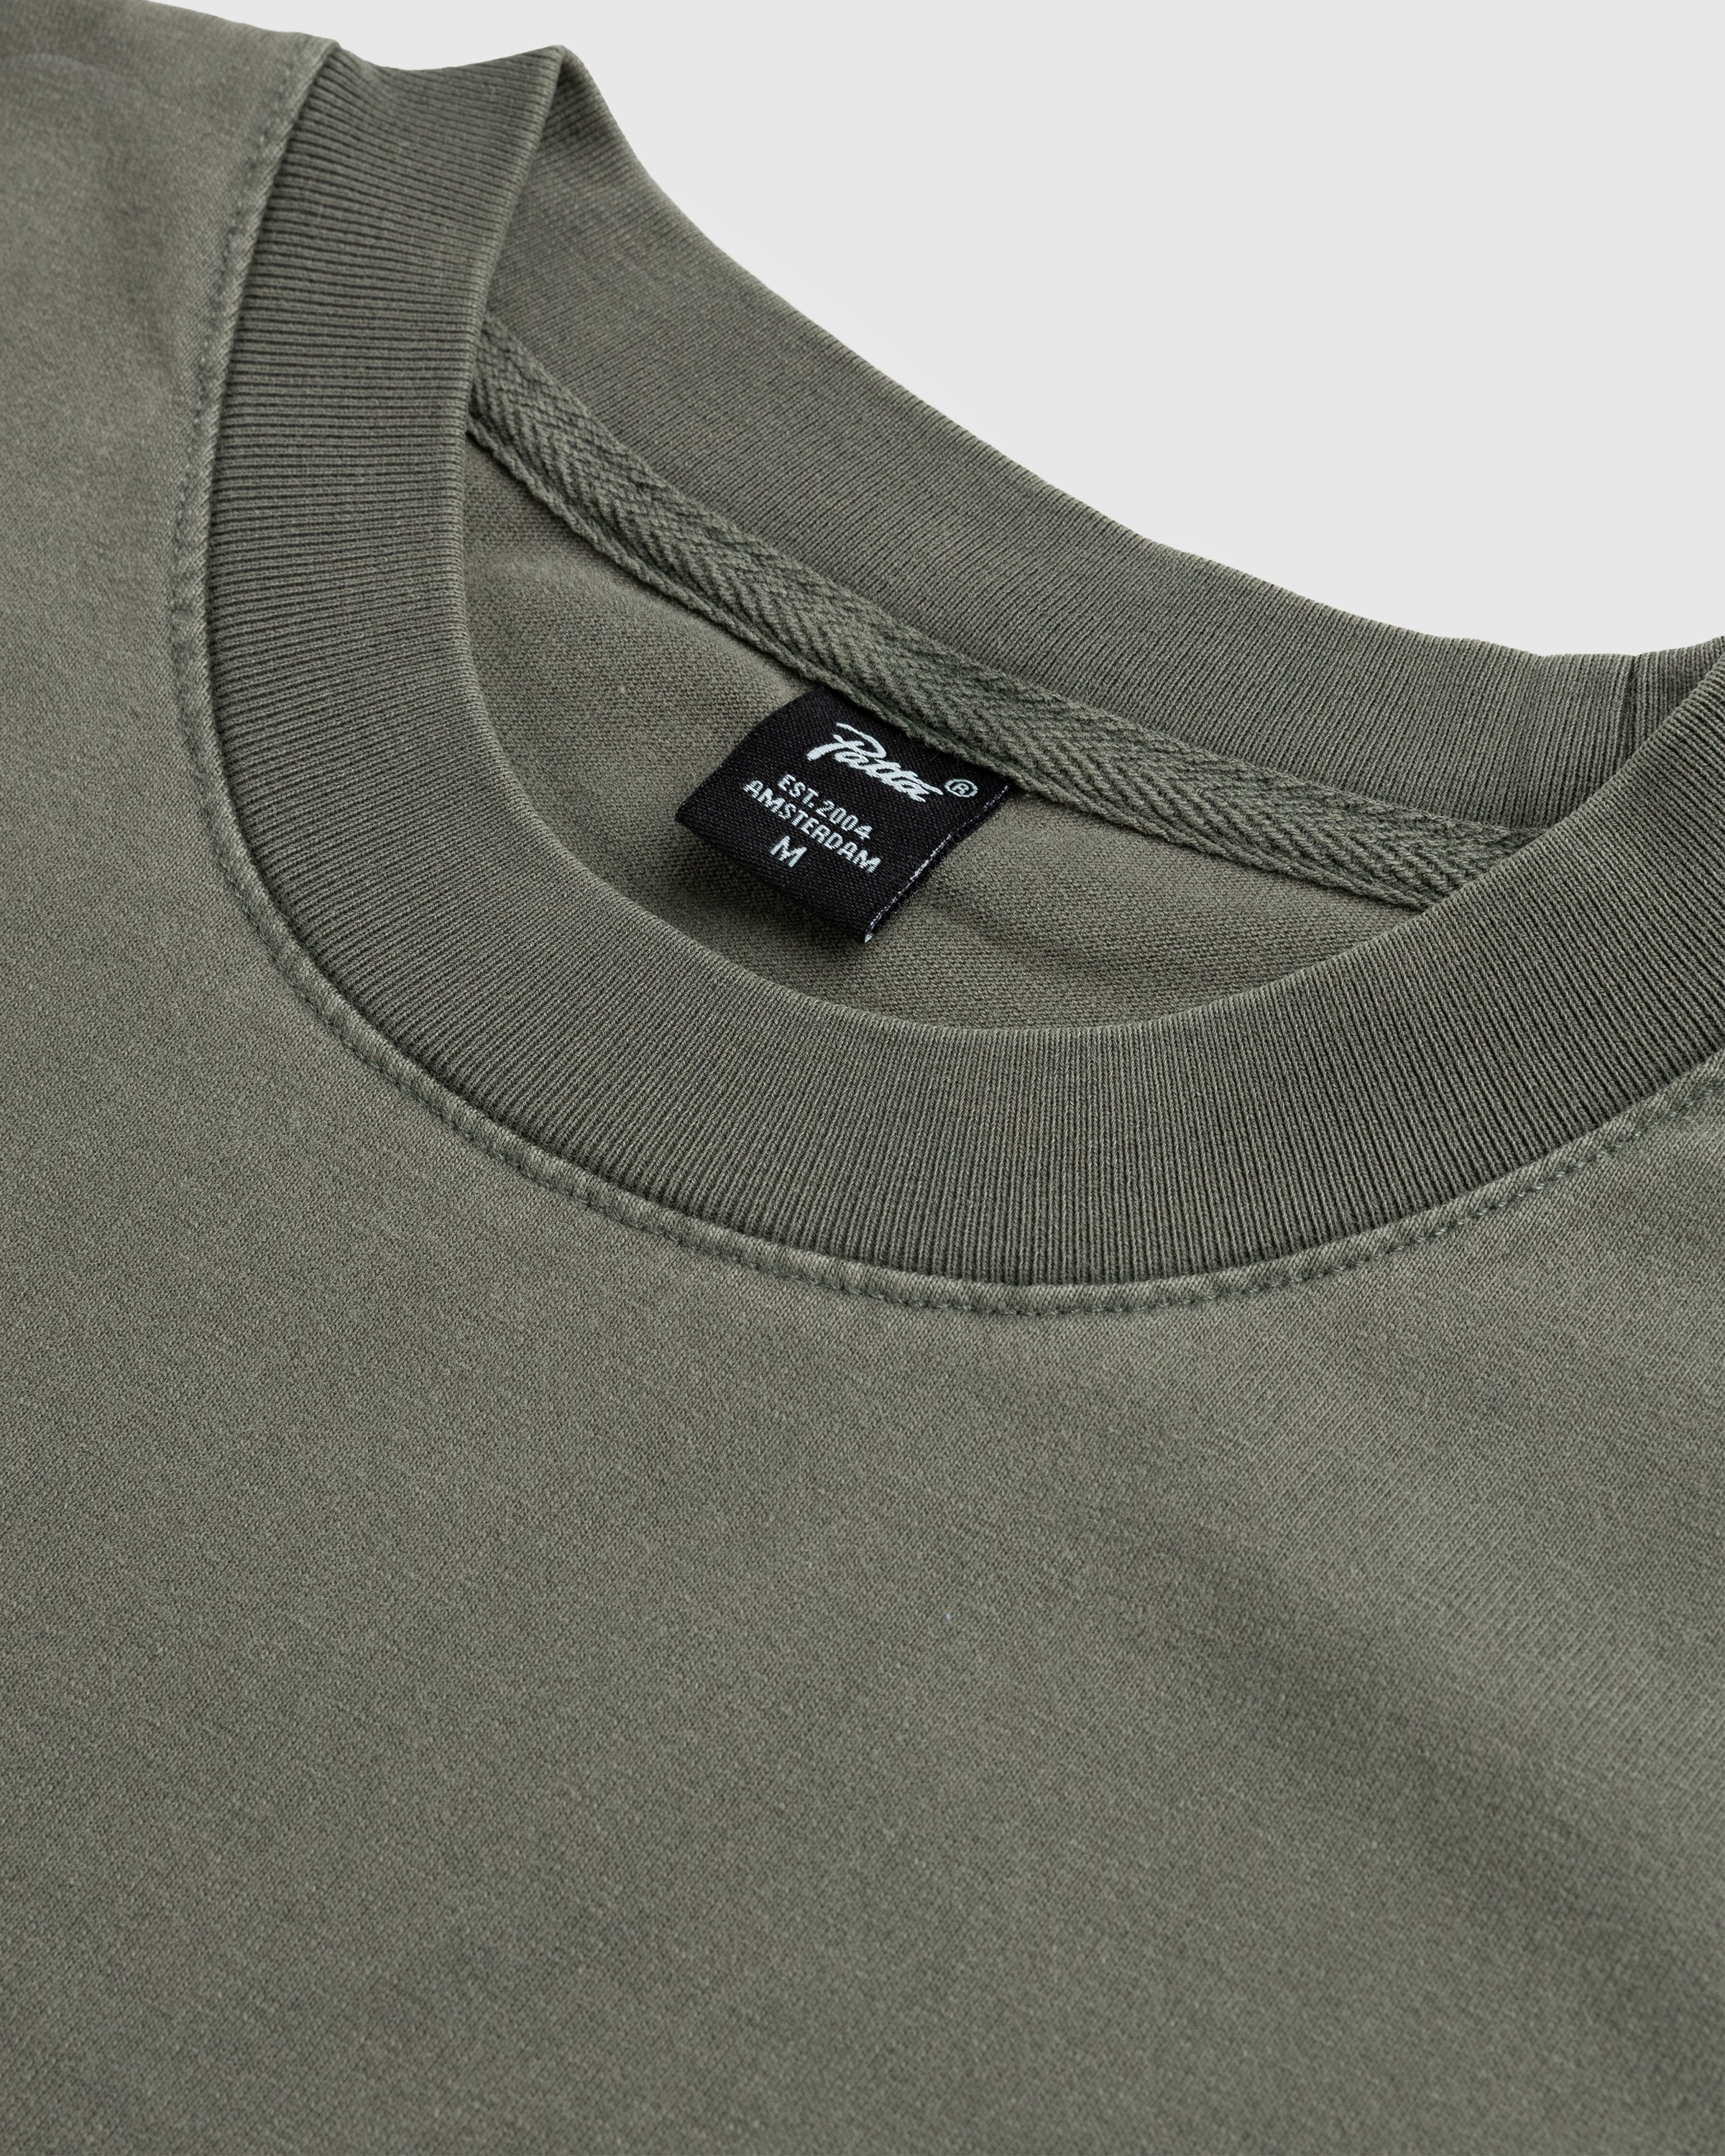 Patta - Basic Washed Pocket T-Shirt Beetle - Clothing - Green - Image 5